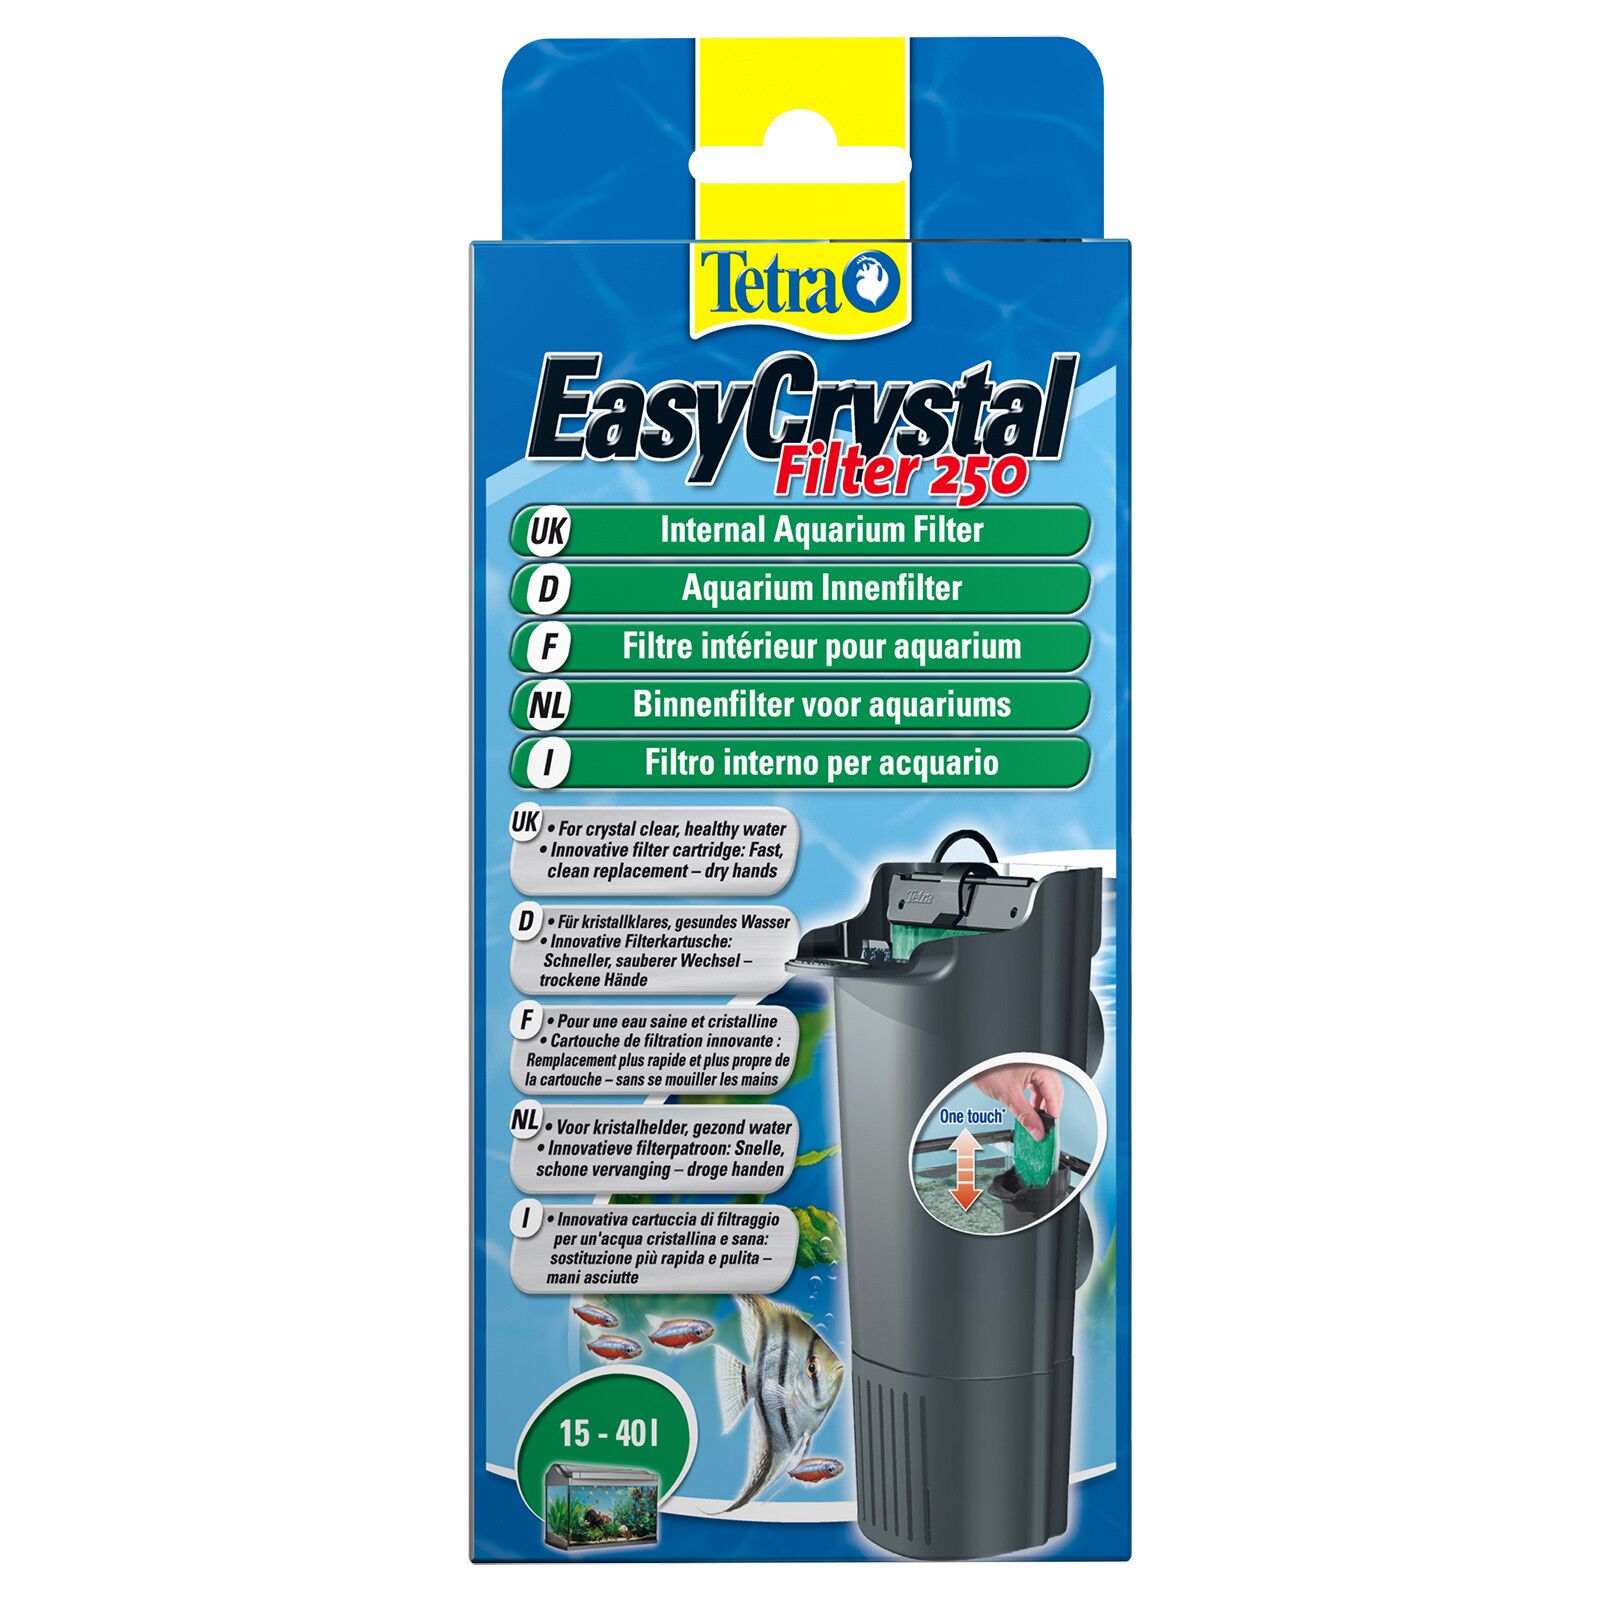 Tetra - EasyCrystal Filter 250